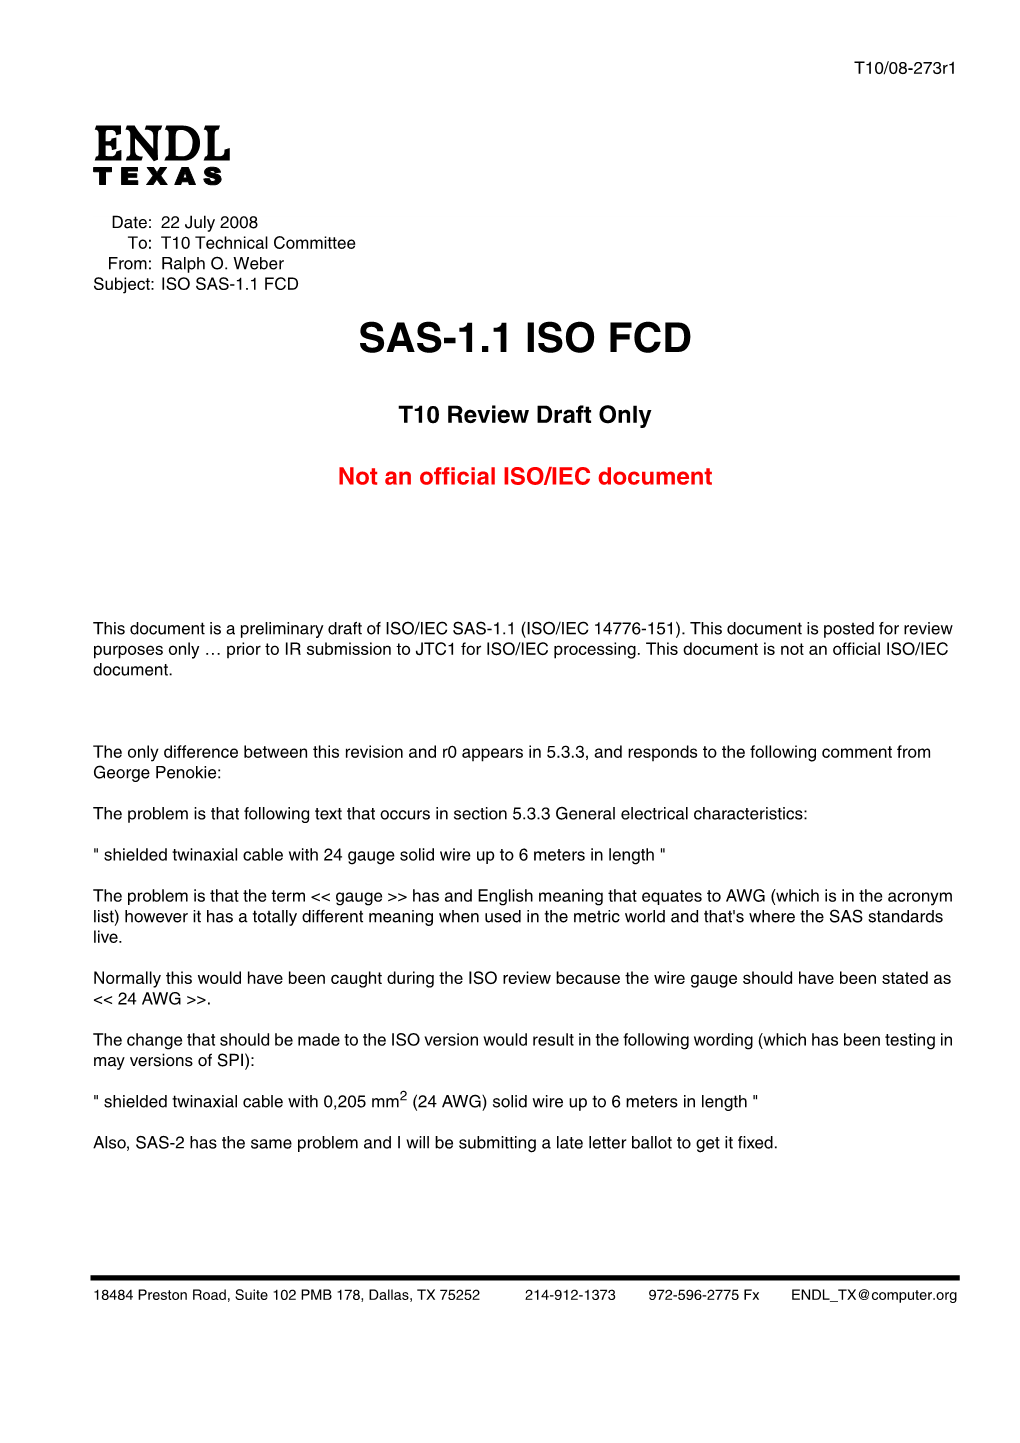 Serial Attached SCSI - 1.1 (SAS-1.1)